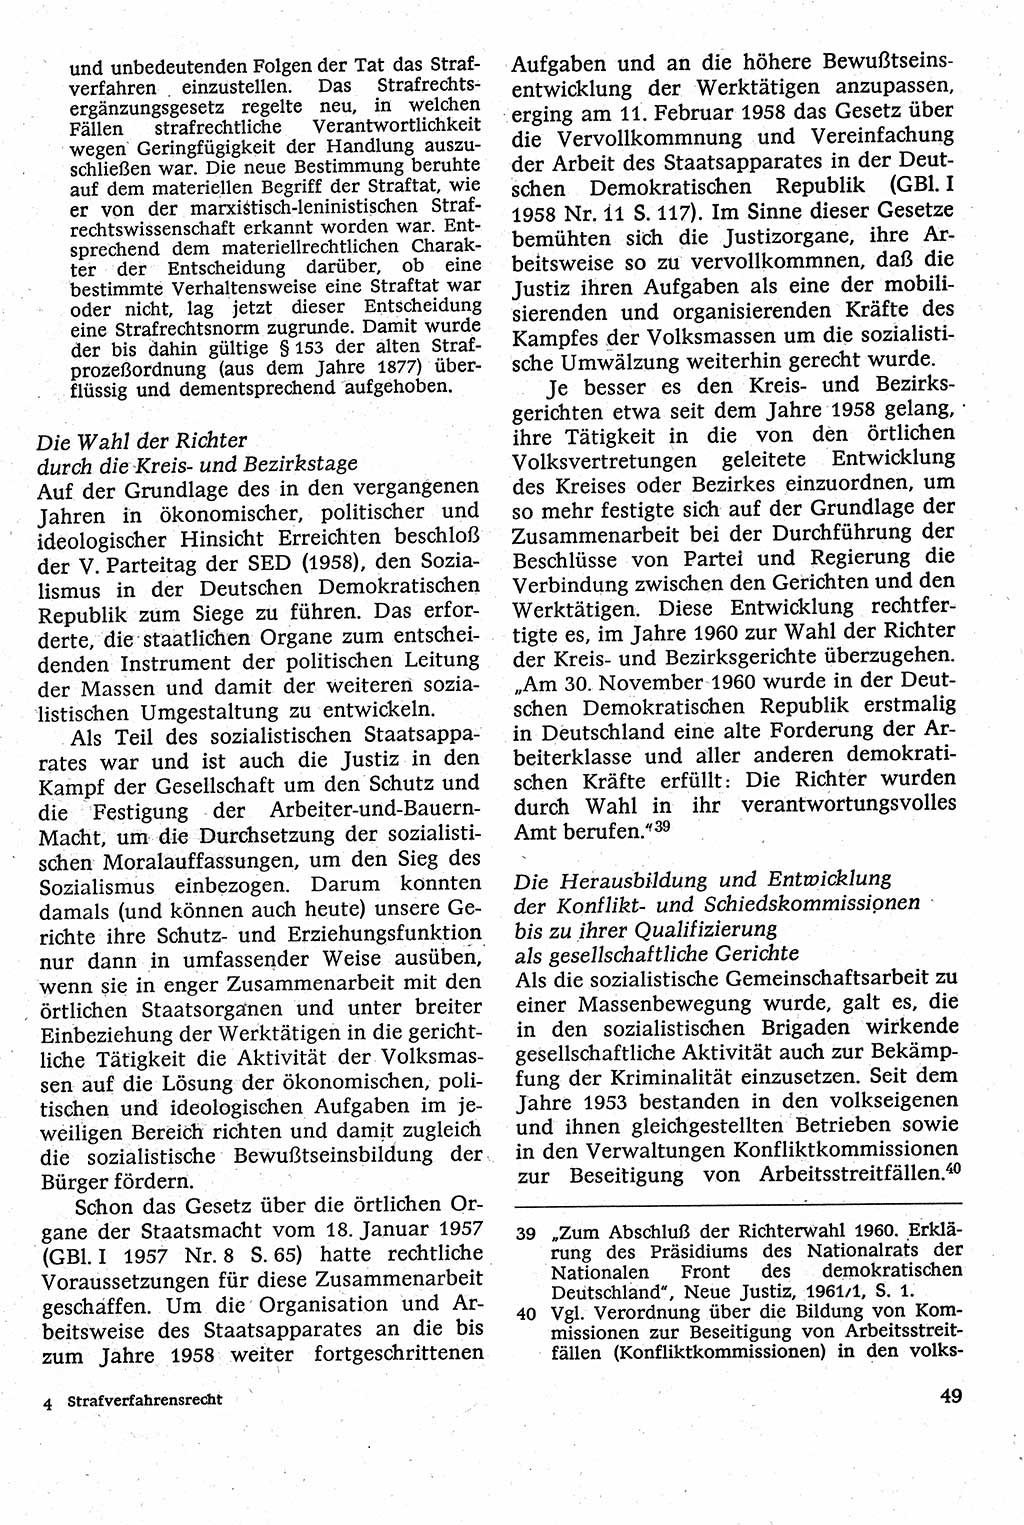 Strafverfahrensrecht [Deutsche Demokratische Republik (DDR)], Lehrbuch 1982, Seite 49 (Strafverf.-R. DDR Lb. 1982, S. 49)